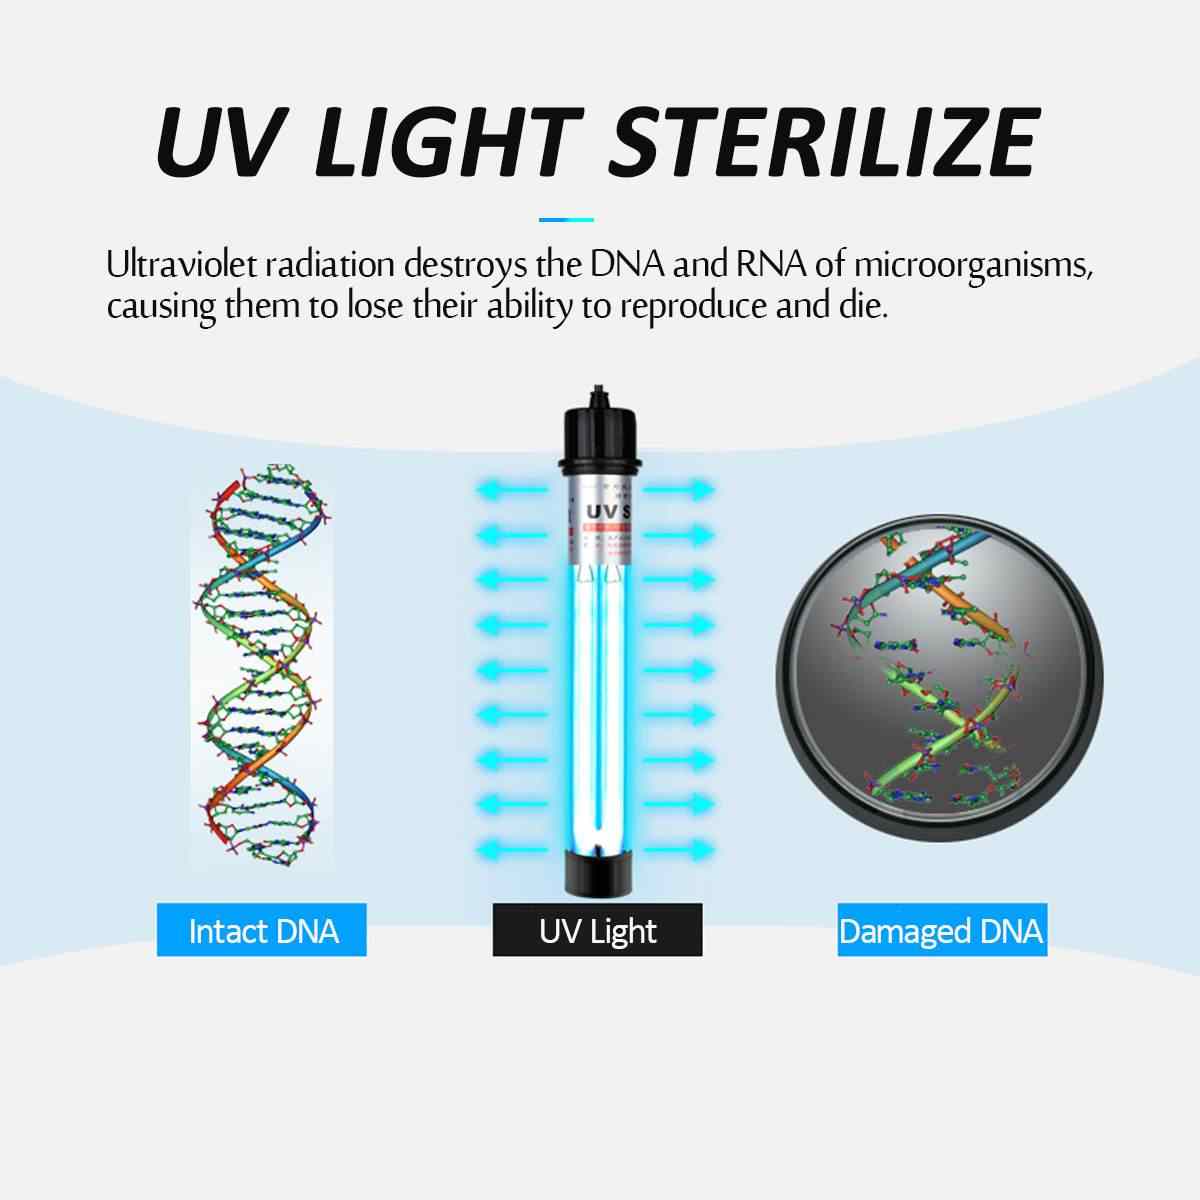 Đèn UV 20W Sterilization King Bóng Kép cao cấp, diệt tảo, diệt khuẩn cho bể cá, hồ cá, hồ thủy sinh siêu sạch ( Trắng)